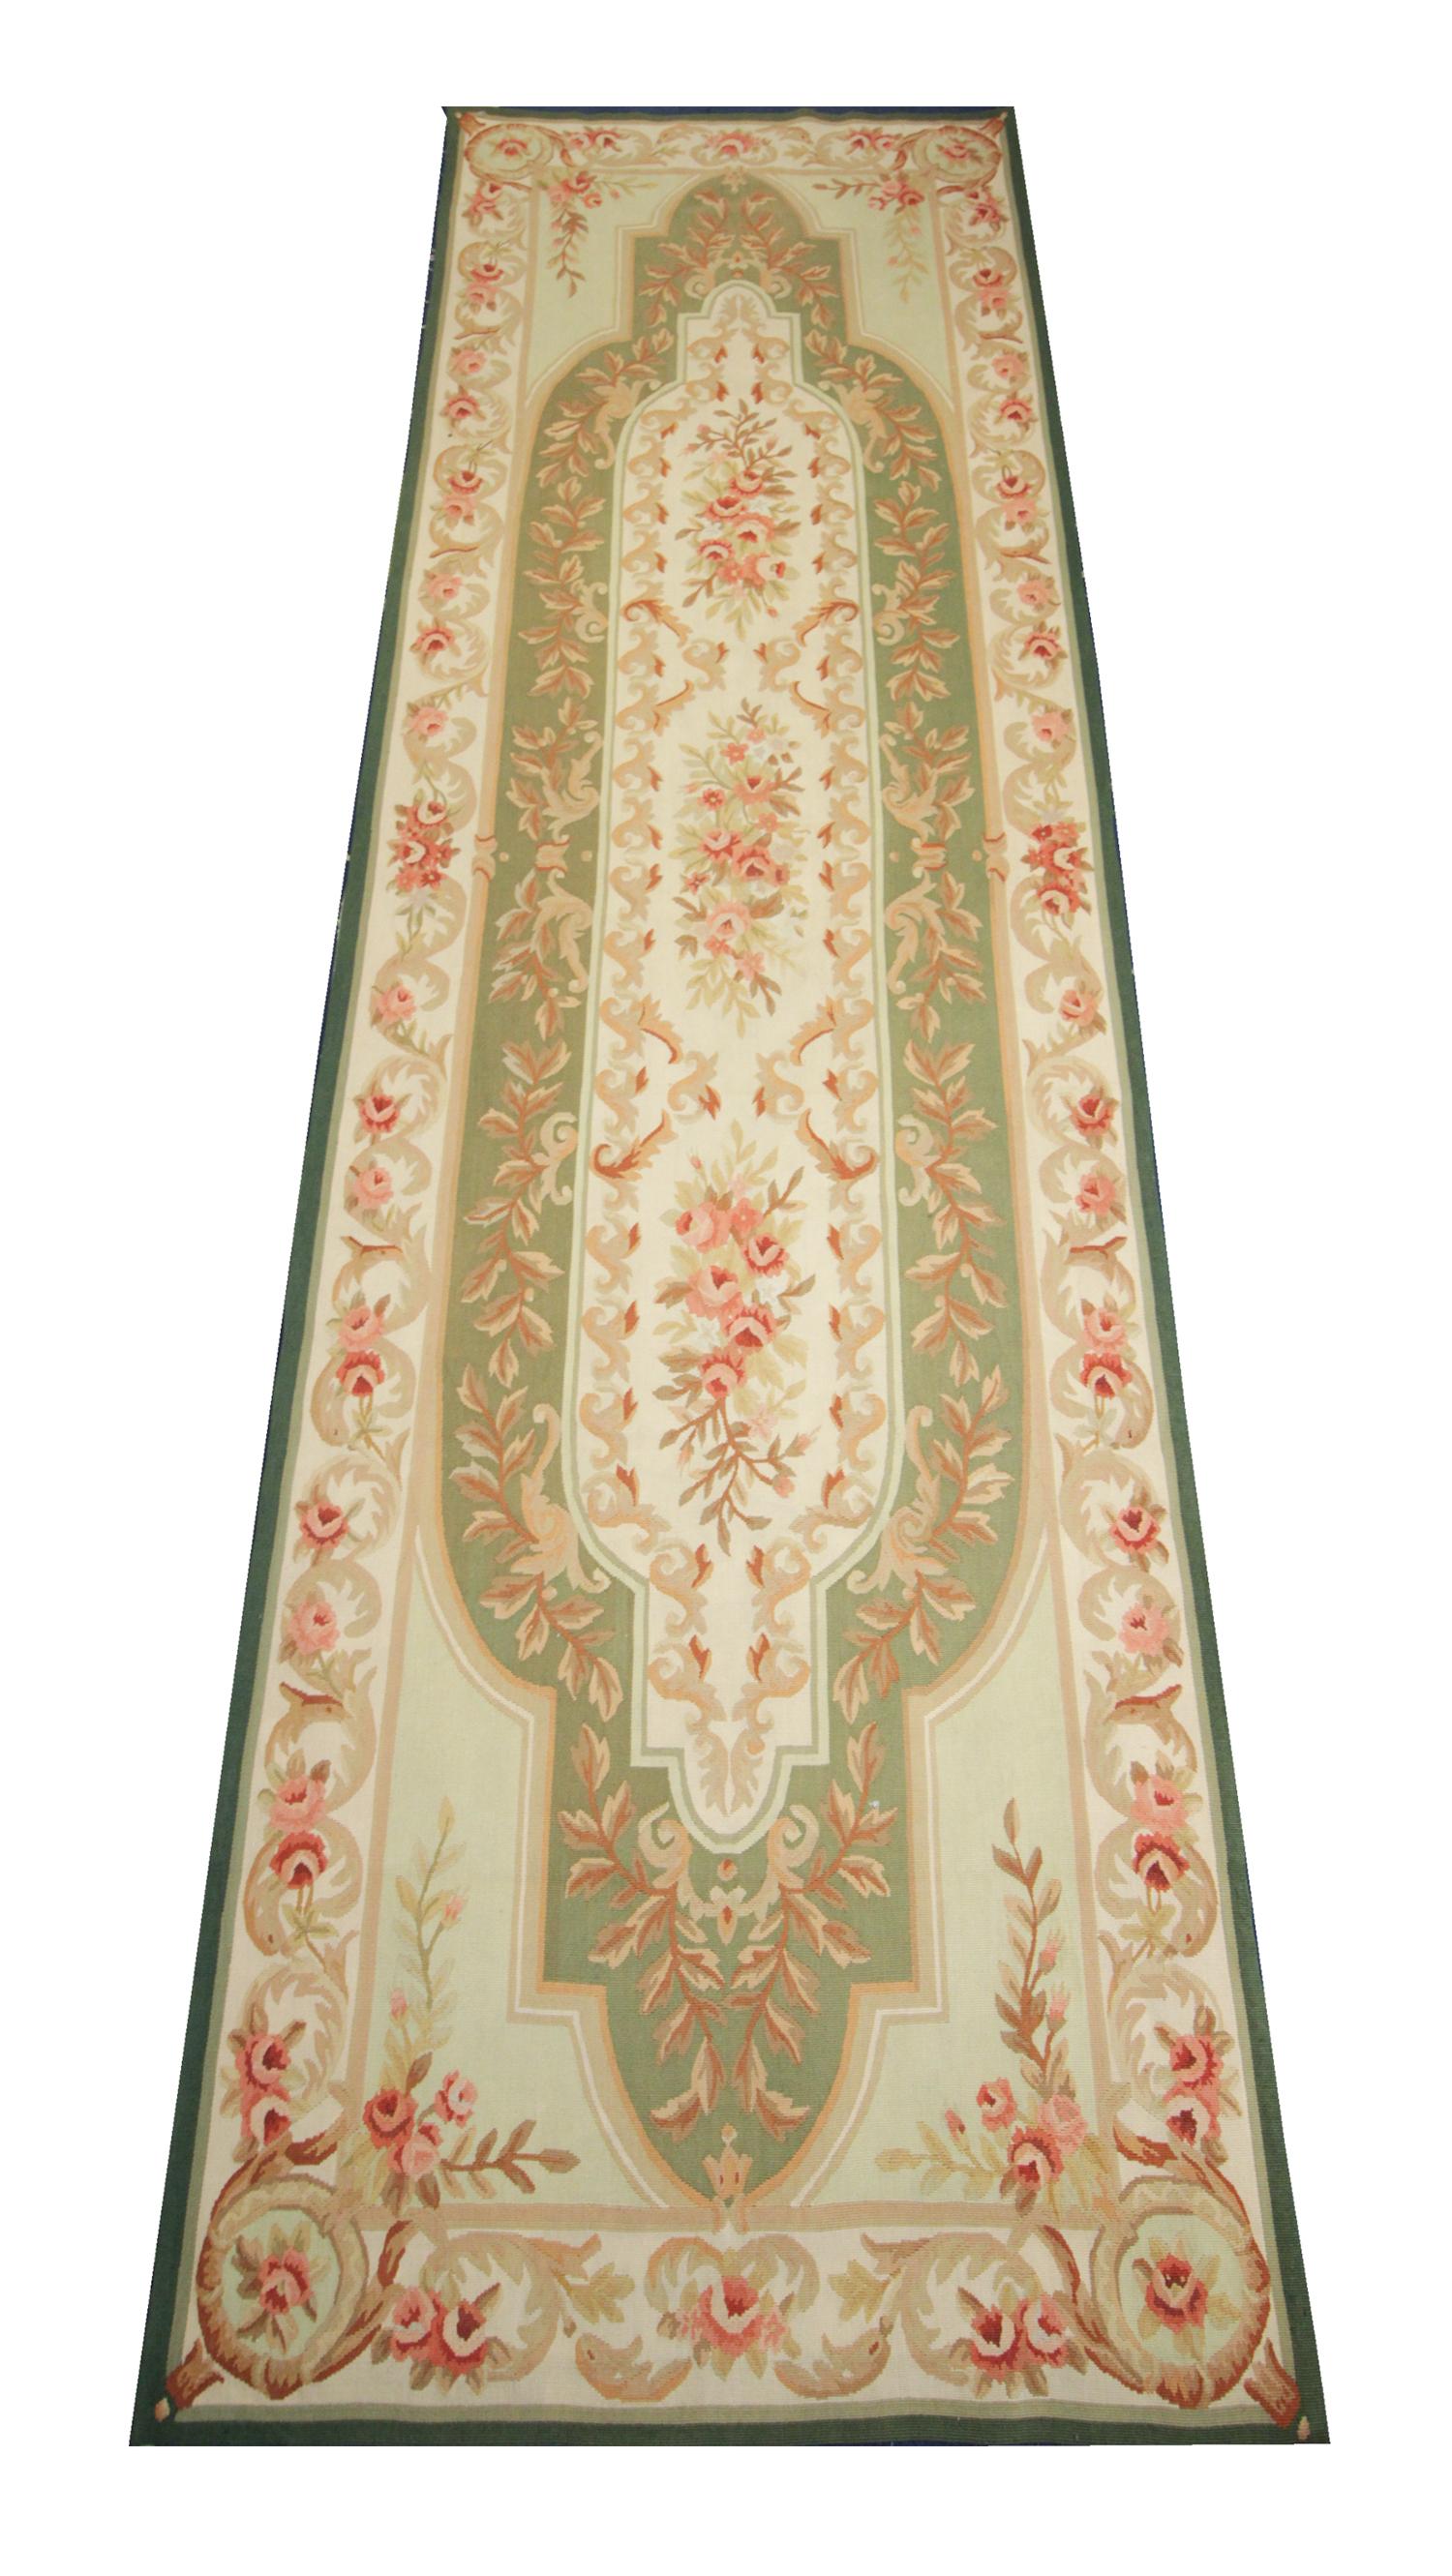 Ce tapis oriental tissé à la main a été tissé à la main en Chine au début du 21e siècle. Le motif central présente un motif floral symétrique tissé avec une palette de couleurs unique comprenant du vert, du crème, du rose et du beige. Ce tapis